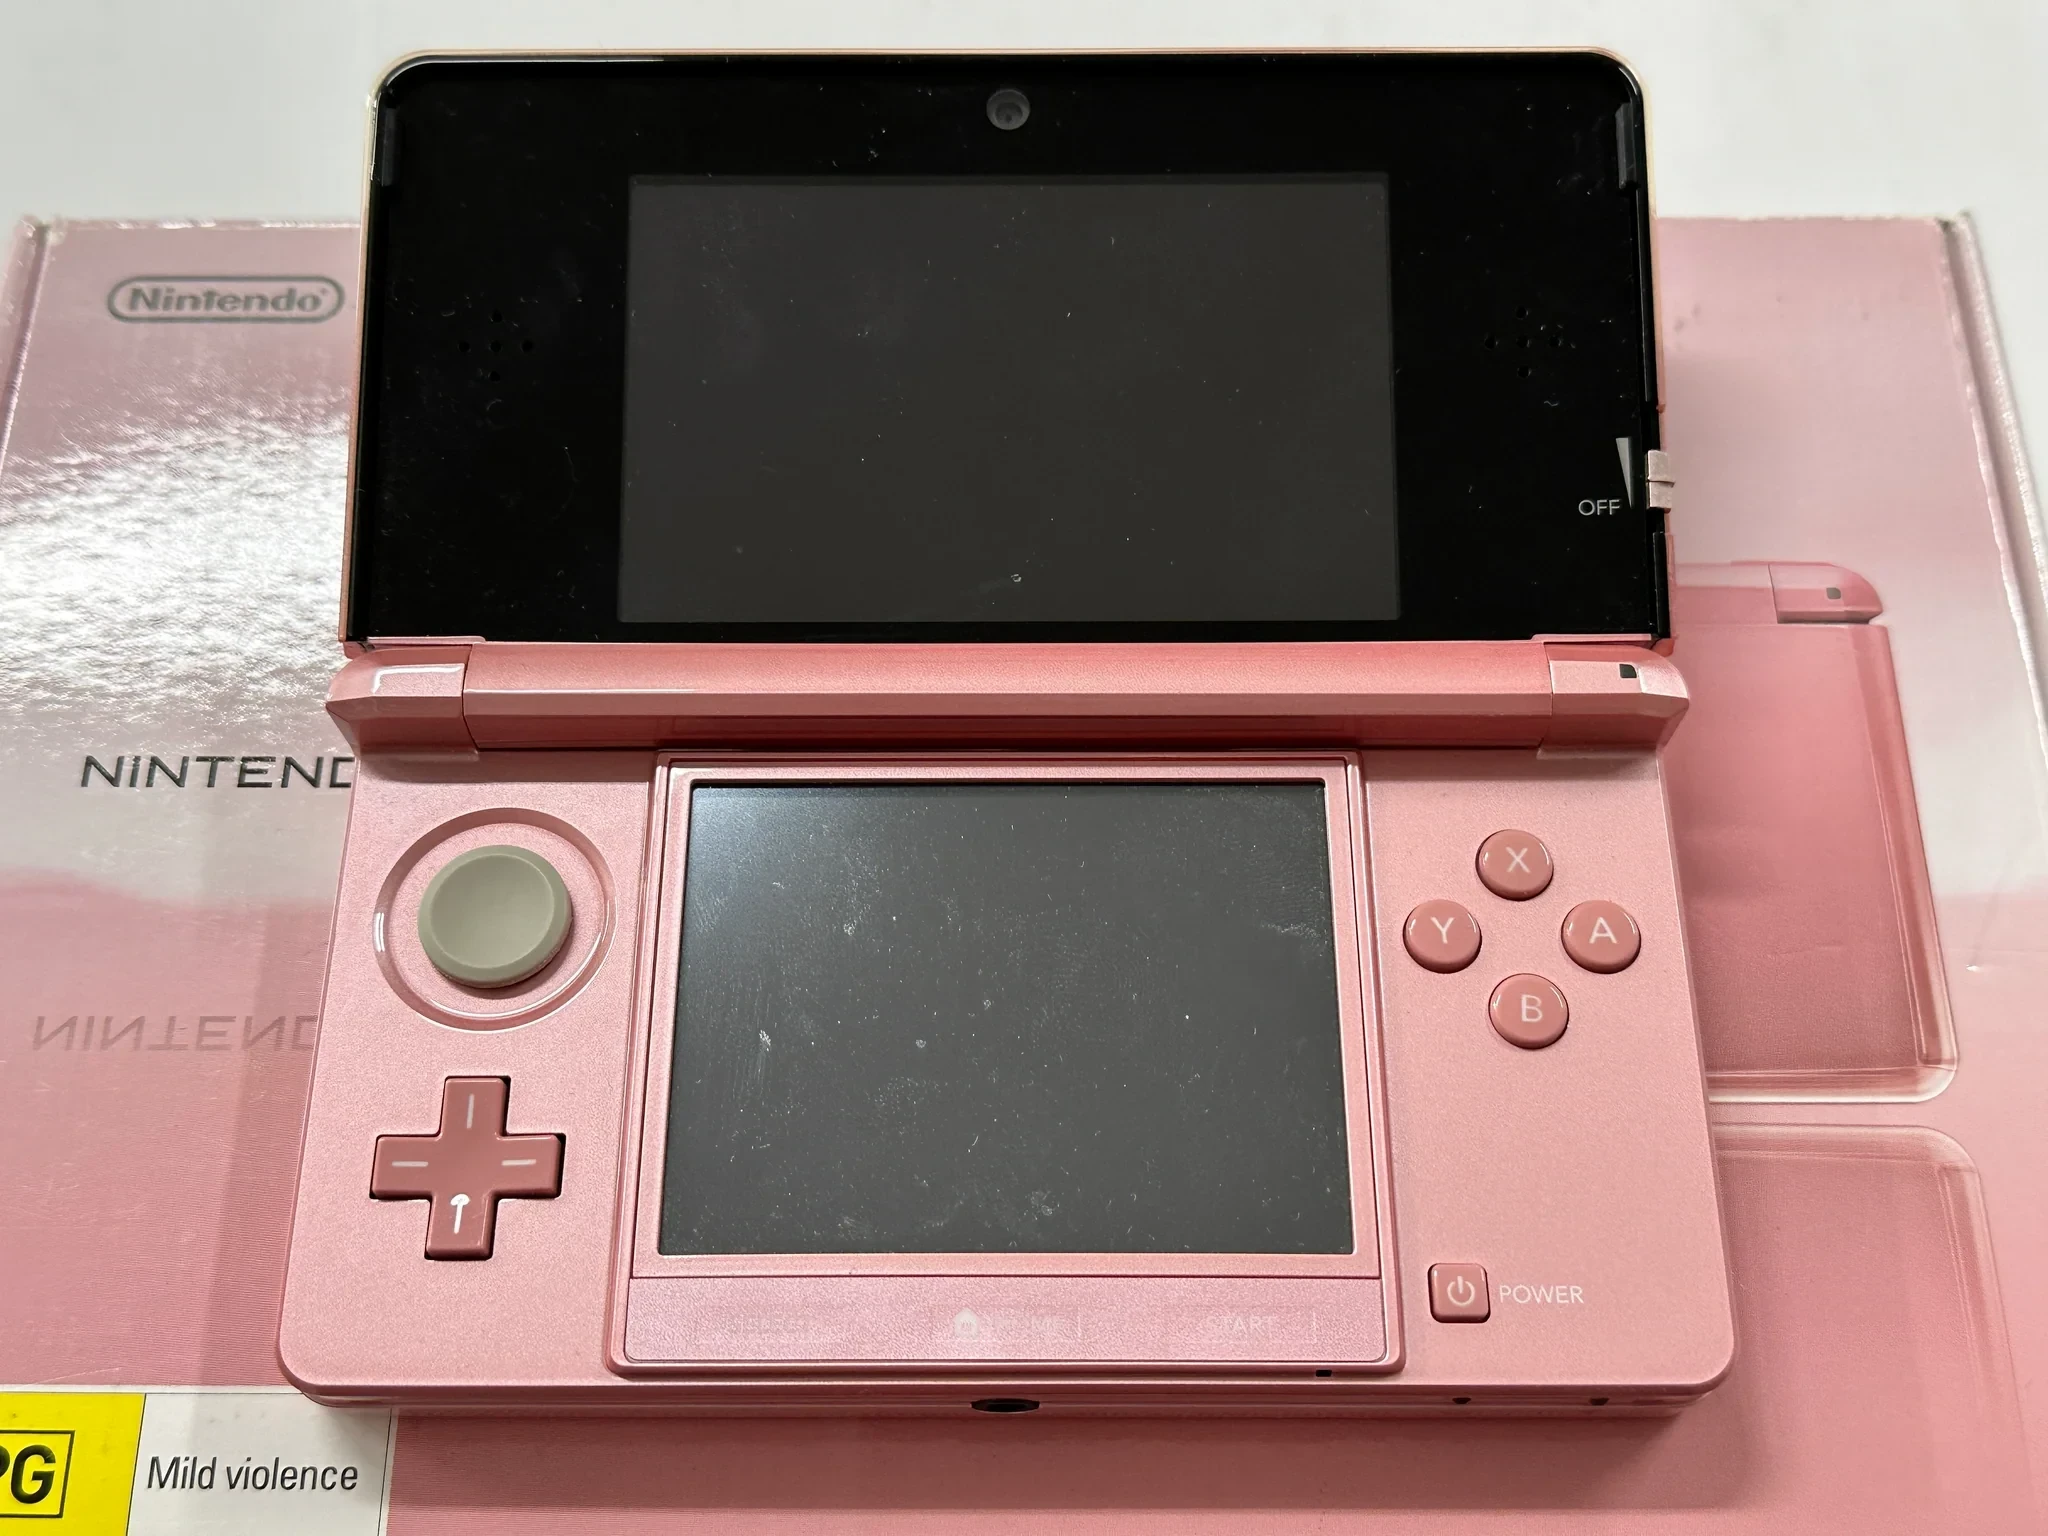  Nintendo 3DS Nintendo 3DS Lavender Pink Console [AUS]